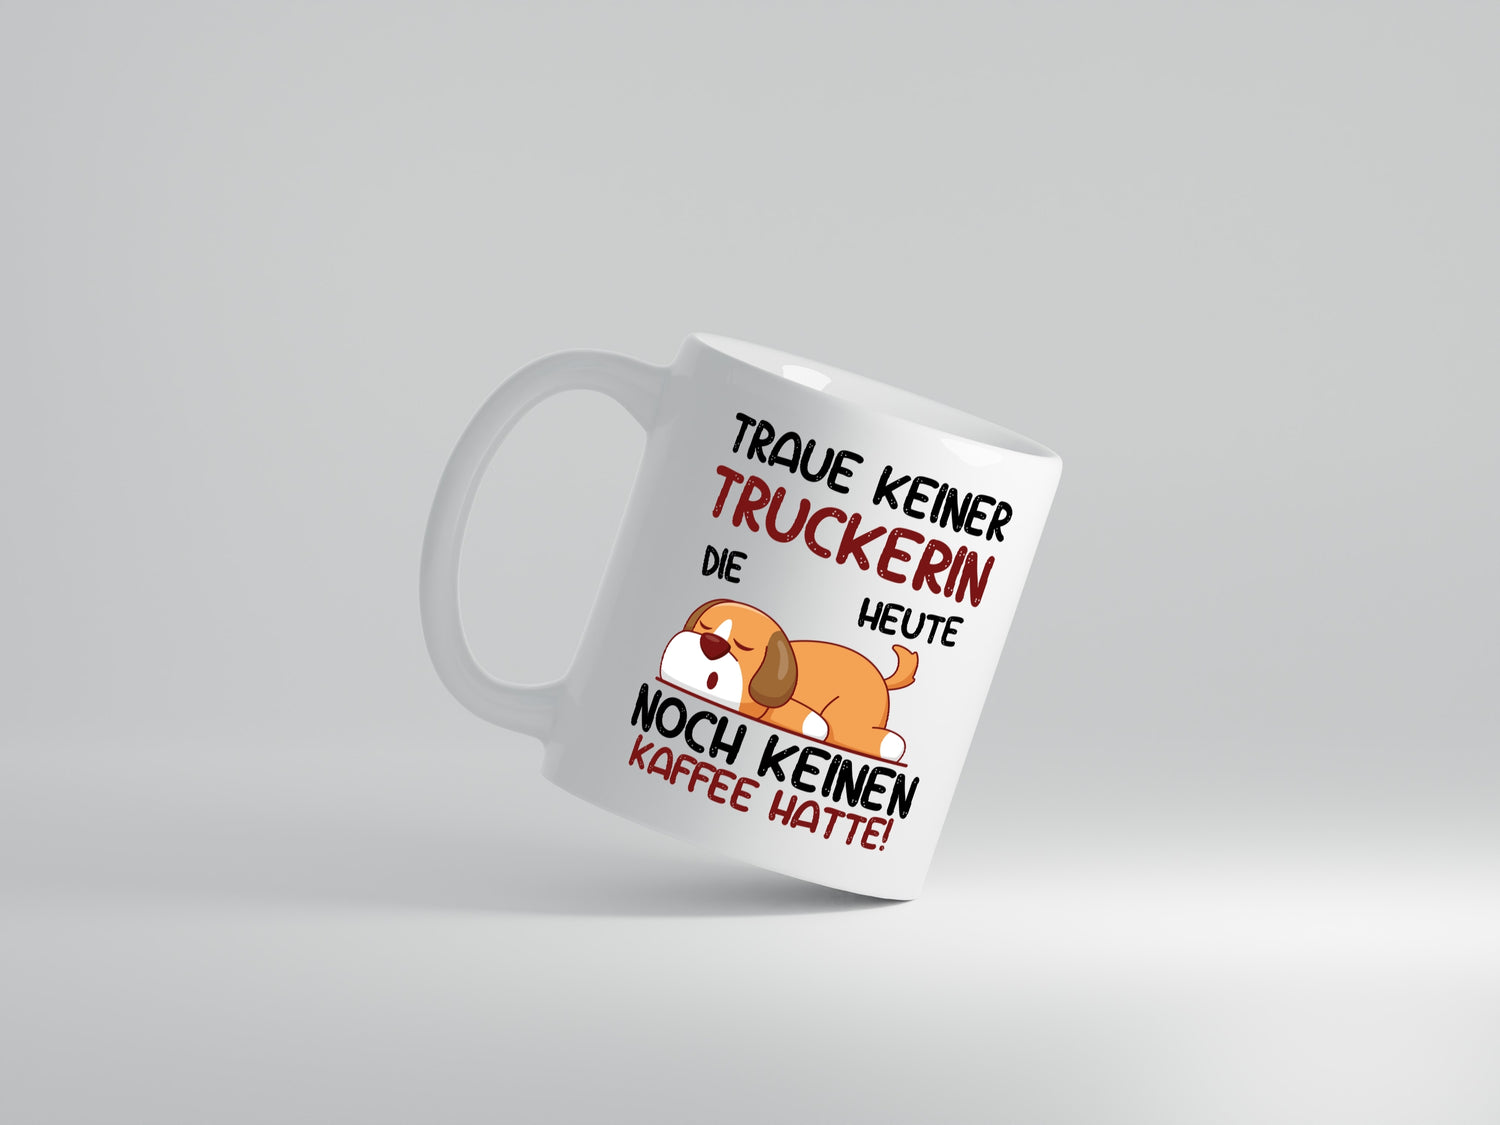 Traue keiner Truckerin | LKW Fahrerin - Tasse Weiß - Kaffeetasse / Geschenk / Familie